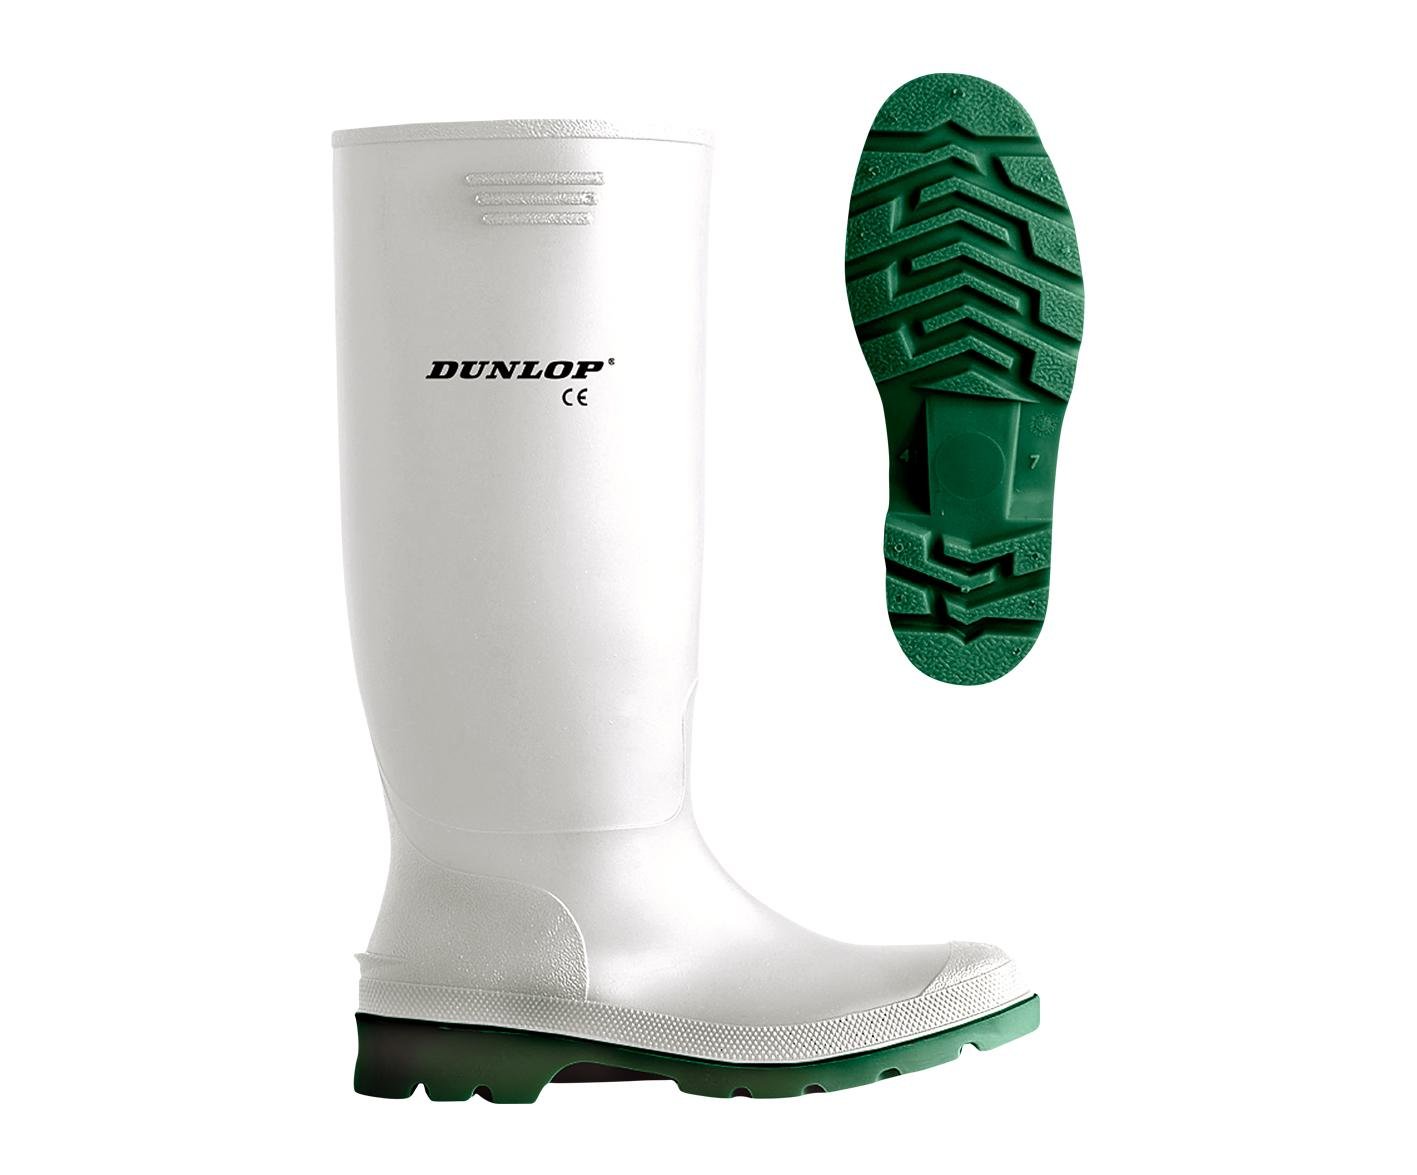 Dunlop ® Pricematsor Rubber Boot